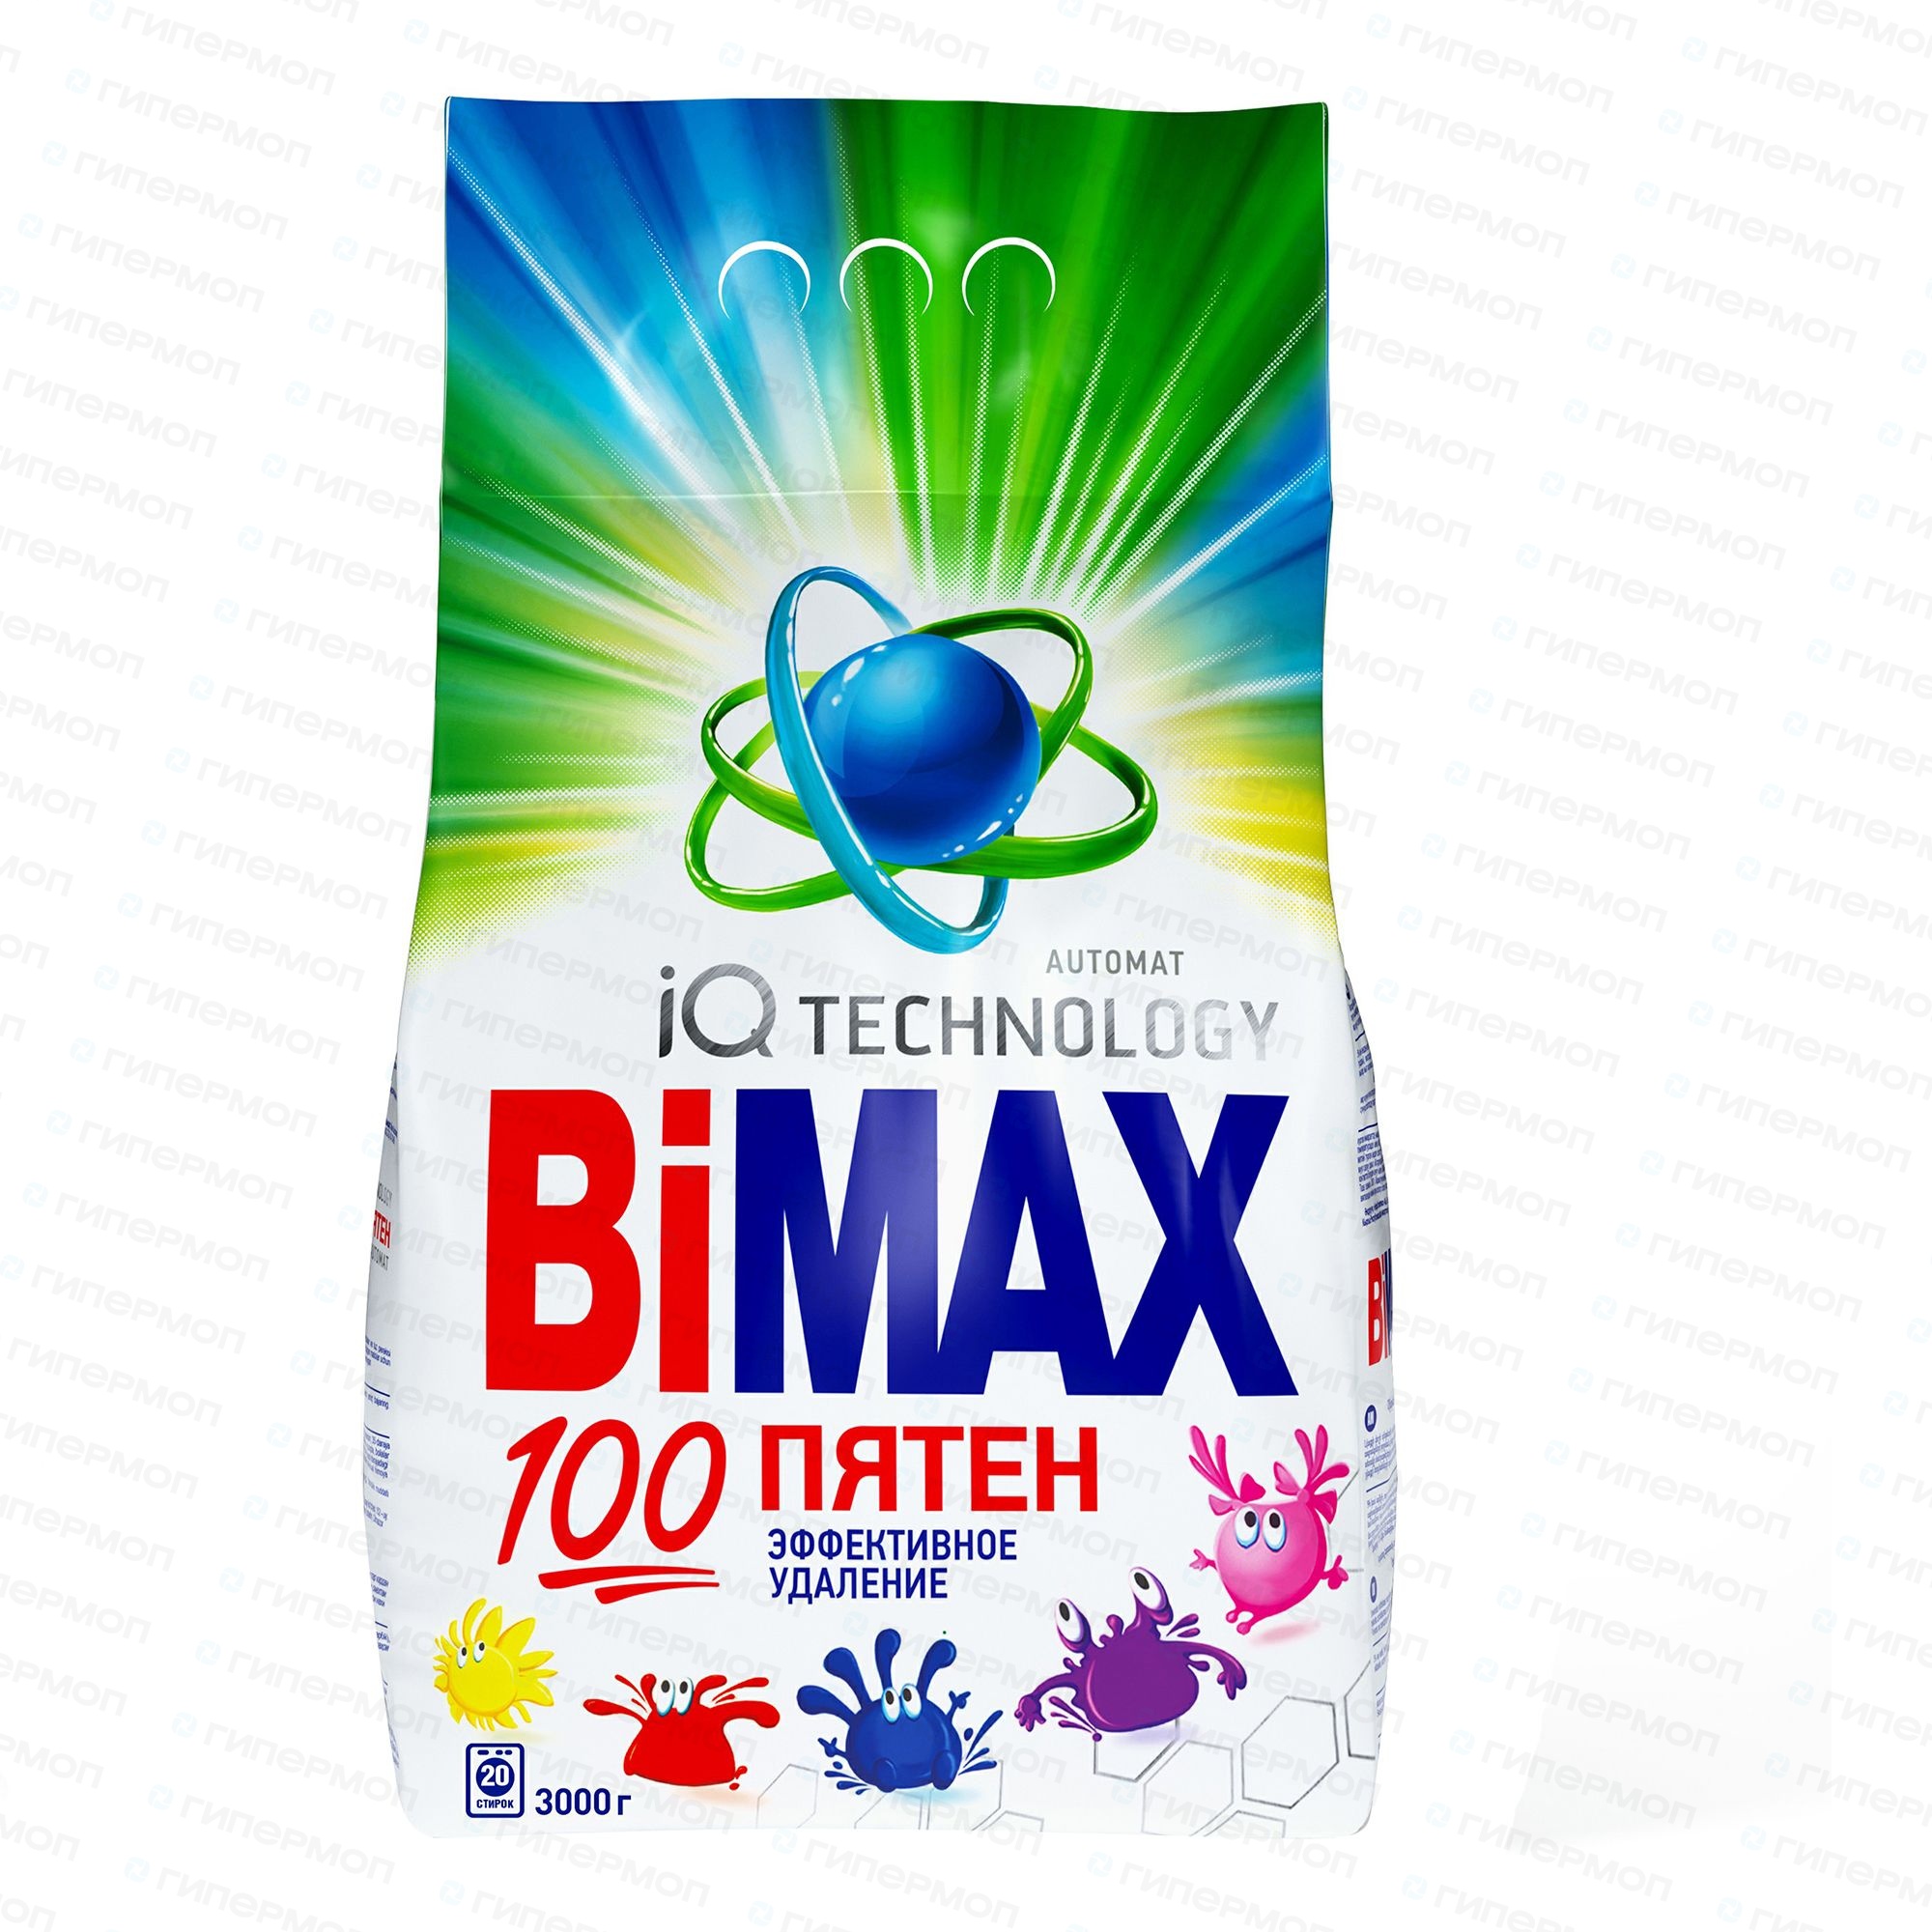 100 пятен. БИМАКС порошок 100 пятен автомат. Стиральный порошок BIMAX 100 пятен автомат 3 кг. BIMAX порошок 3 кг. Порошок д/стирки БИМАКС 100 пятен автомат 2,4кг.